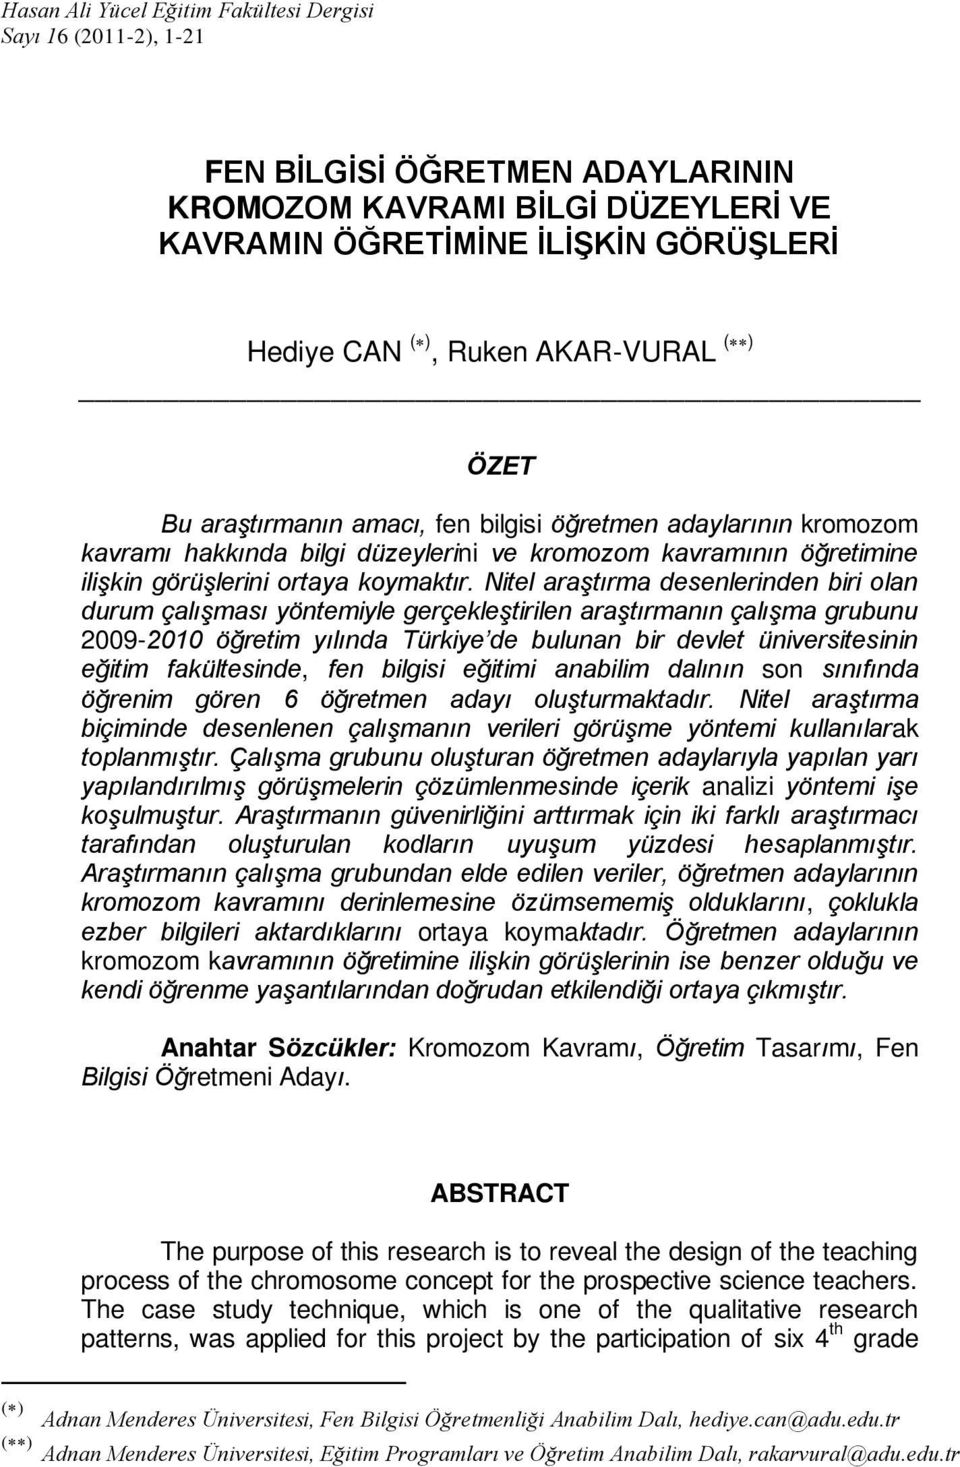 Nitel araştırma desenlerinden biri olan durum çalışması yöntemiyle gerçekleştirilen araştırmanın çalışma grubunu 2009-2010 öğretim yılında Türkiye de bulunan bir devlet üniversitesinin eğitim